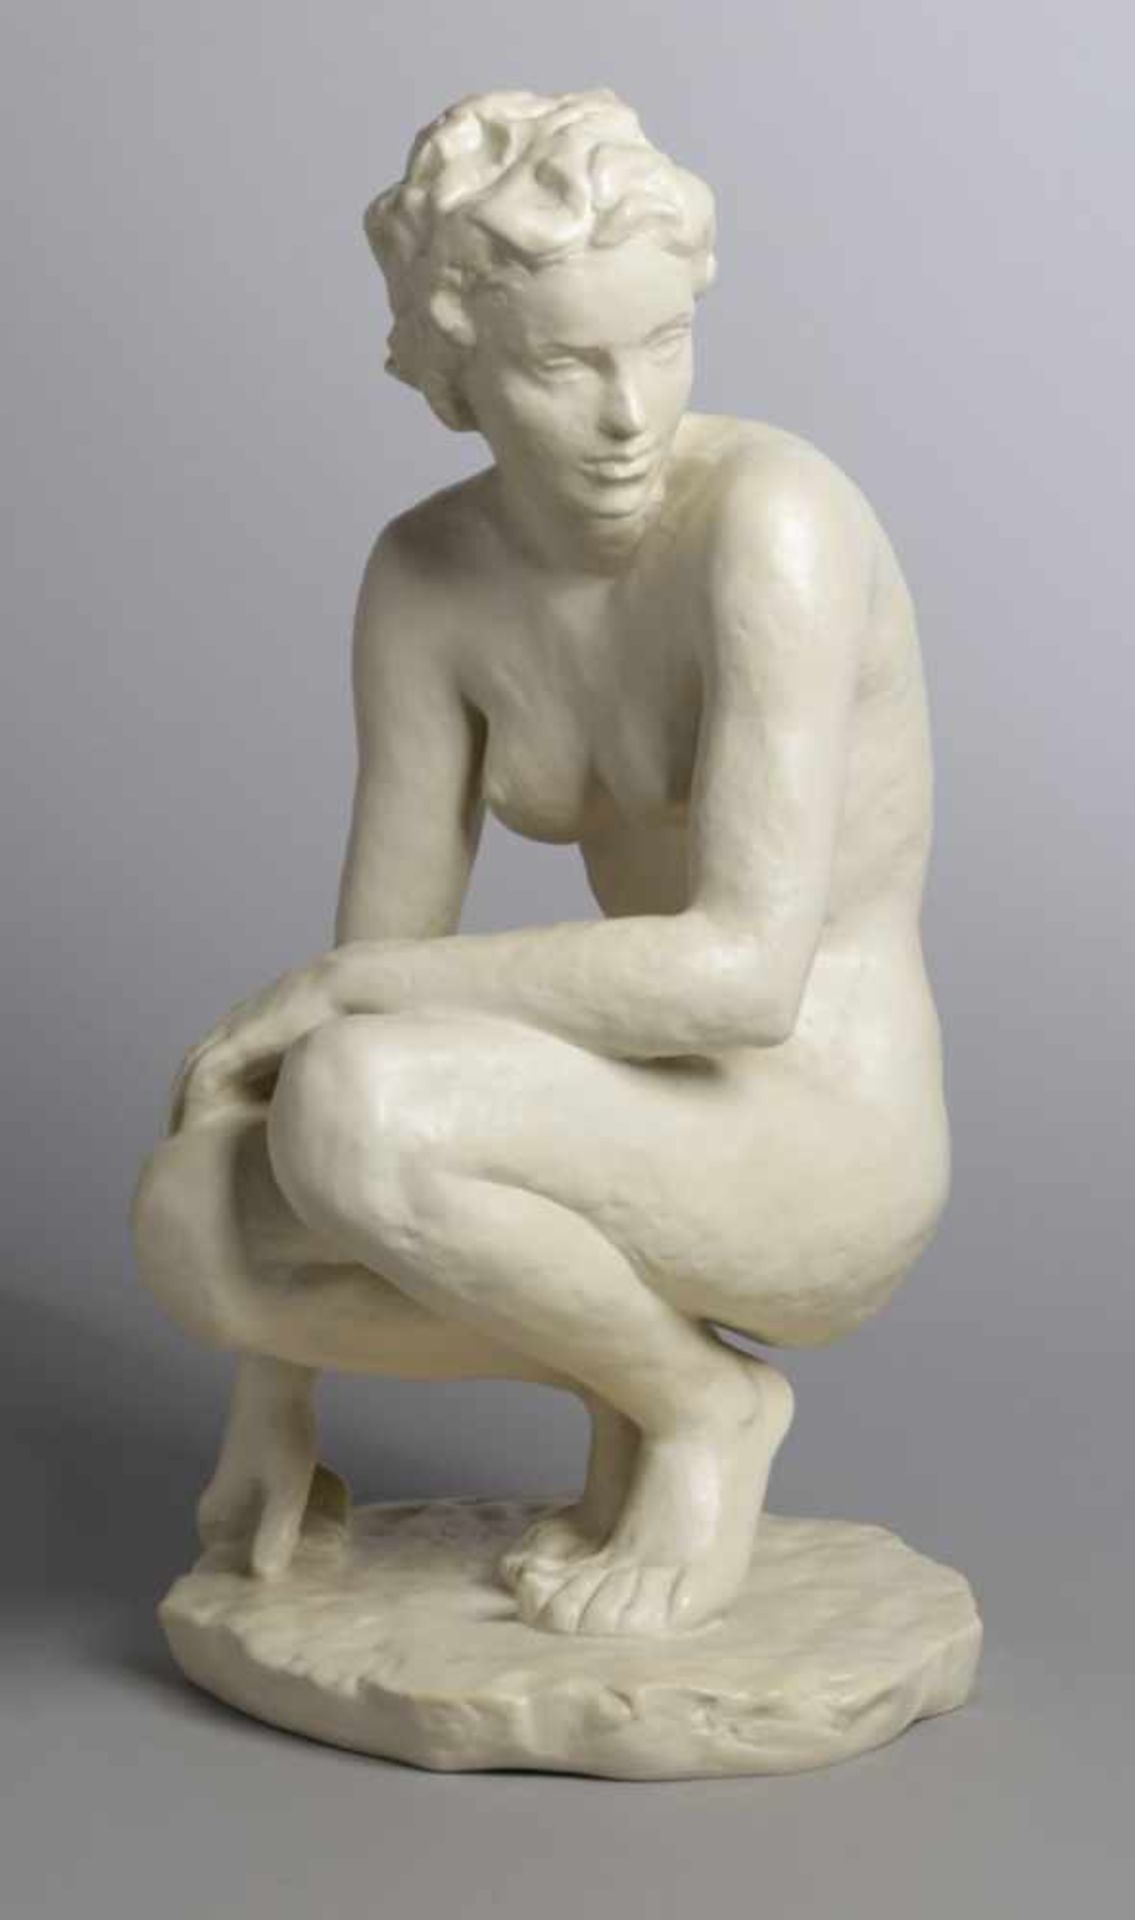 Bisquitporzellan-Figur, "Hockende", Rosenthal, Kunstabteilung Selb, 1941, Entw.: Fritz